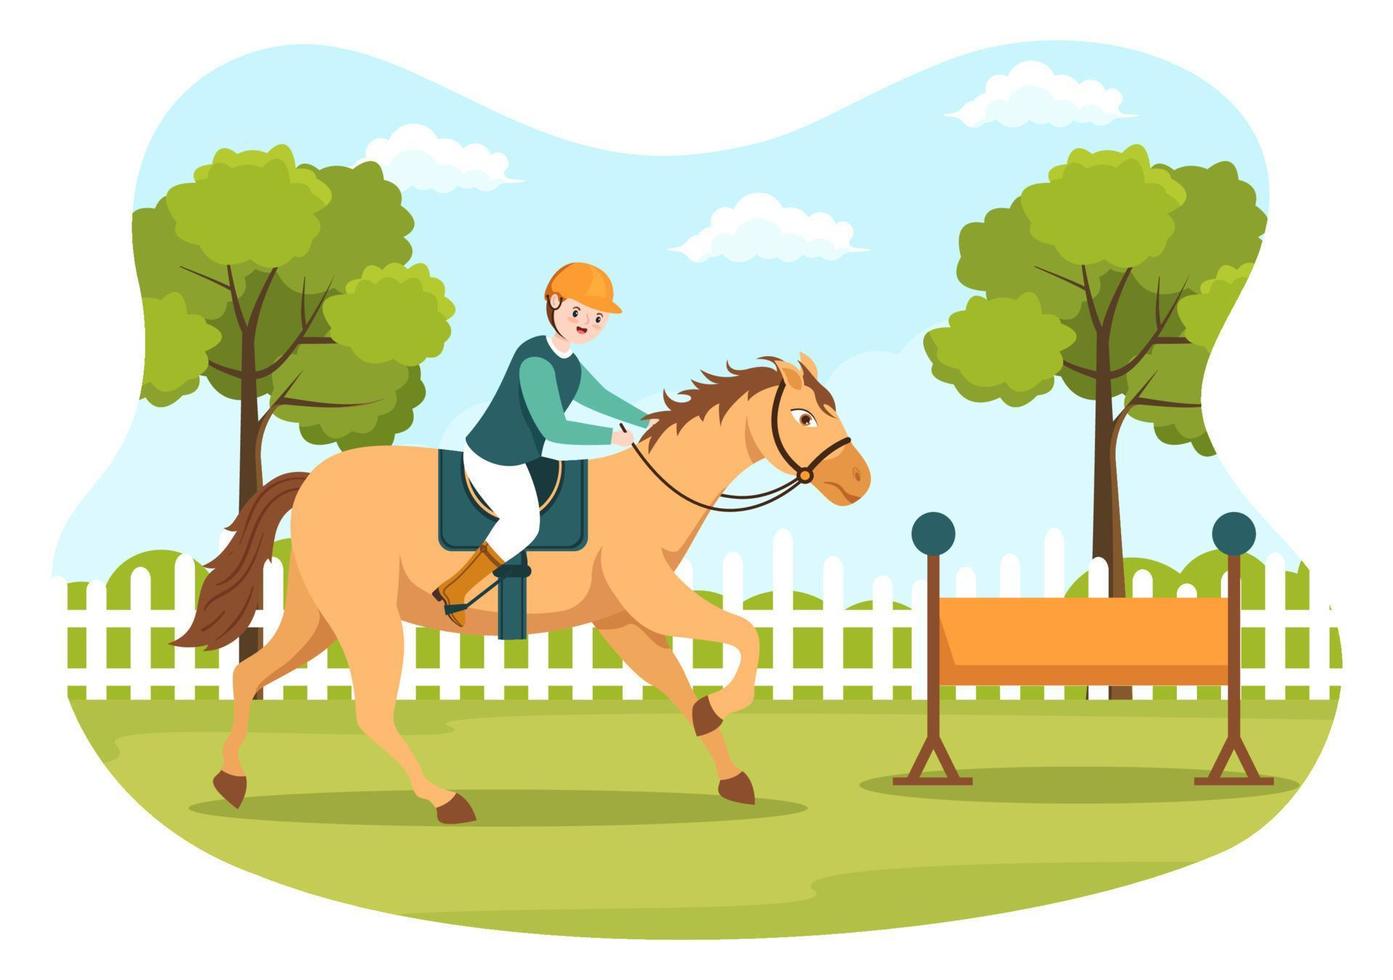 paardrijden cartoon afbeelding met schattige mensen karakter beoefenen van paardrijden of paardensport sporten in het groene veld vector